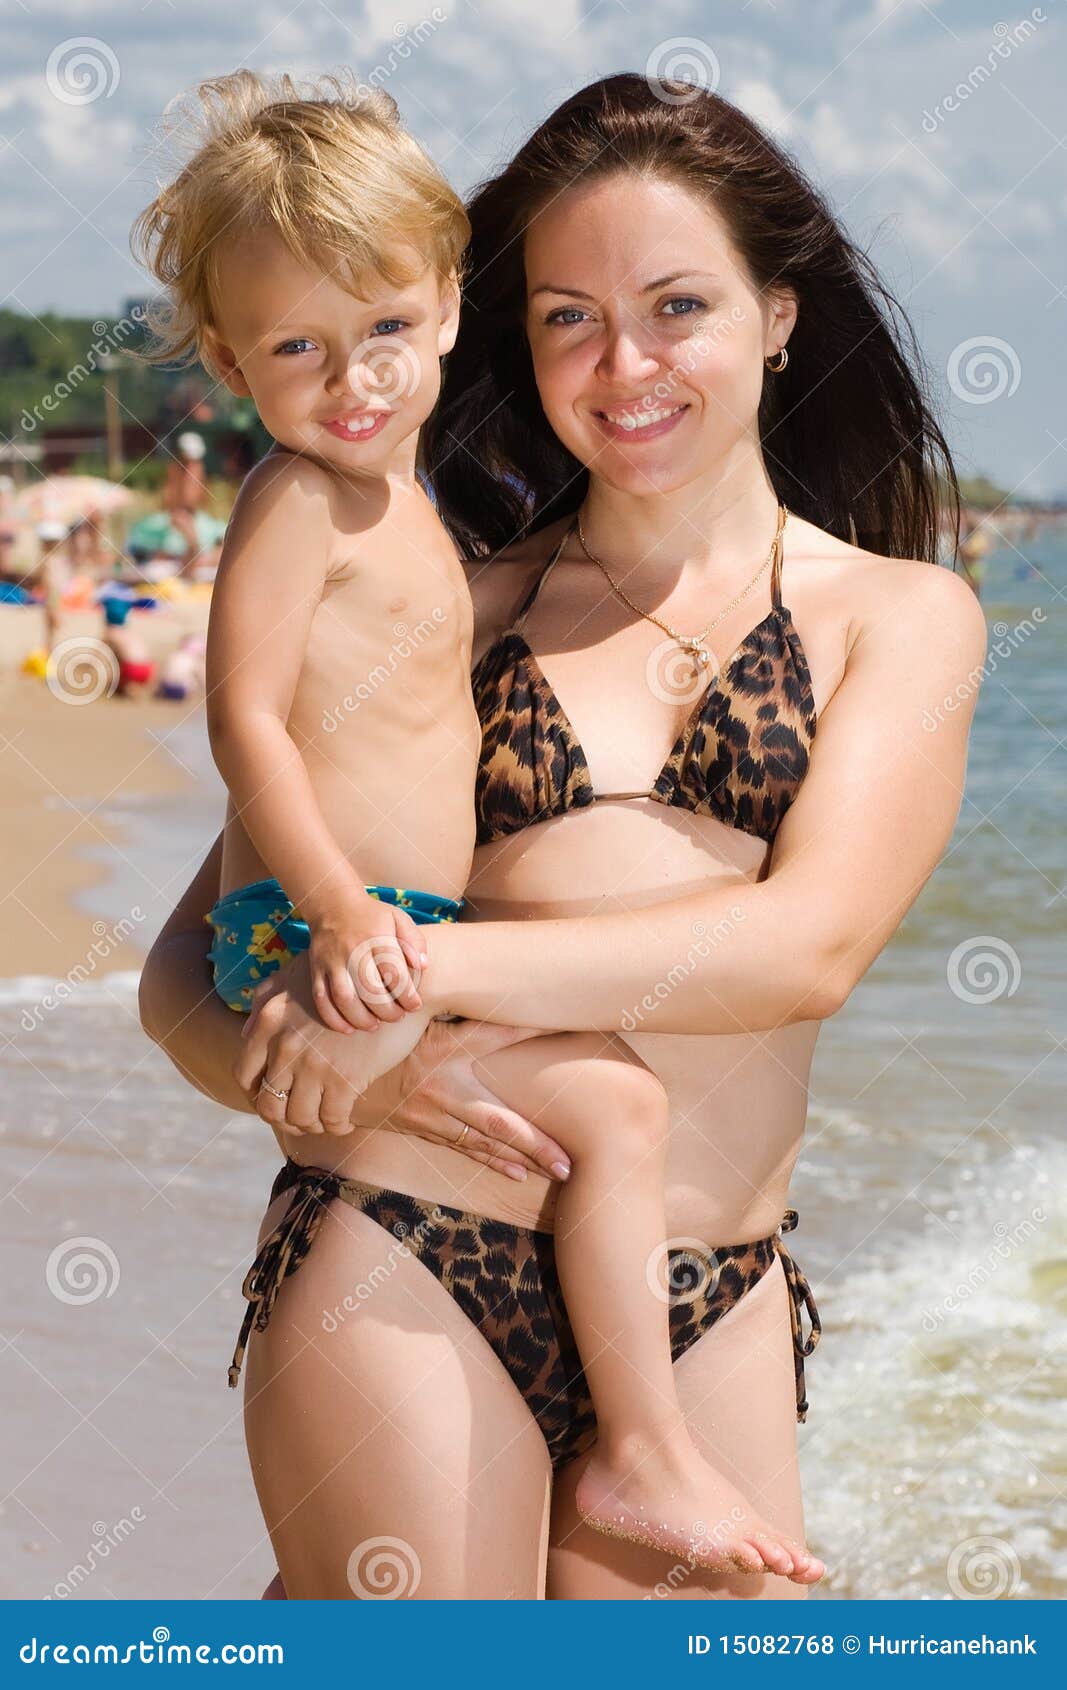 Мамы с дочкой голые